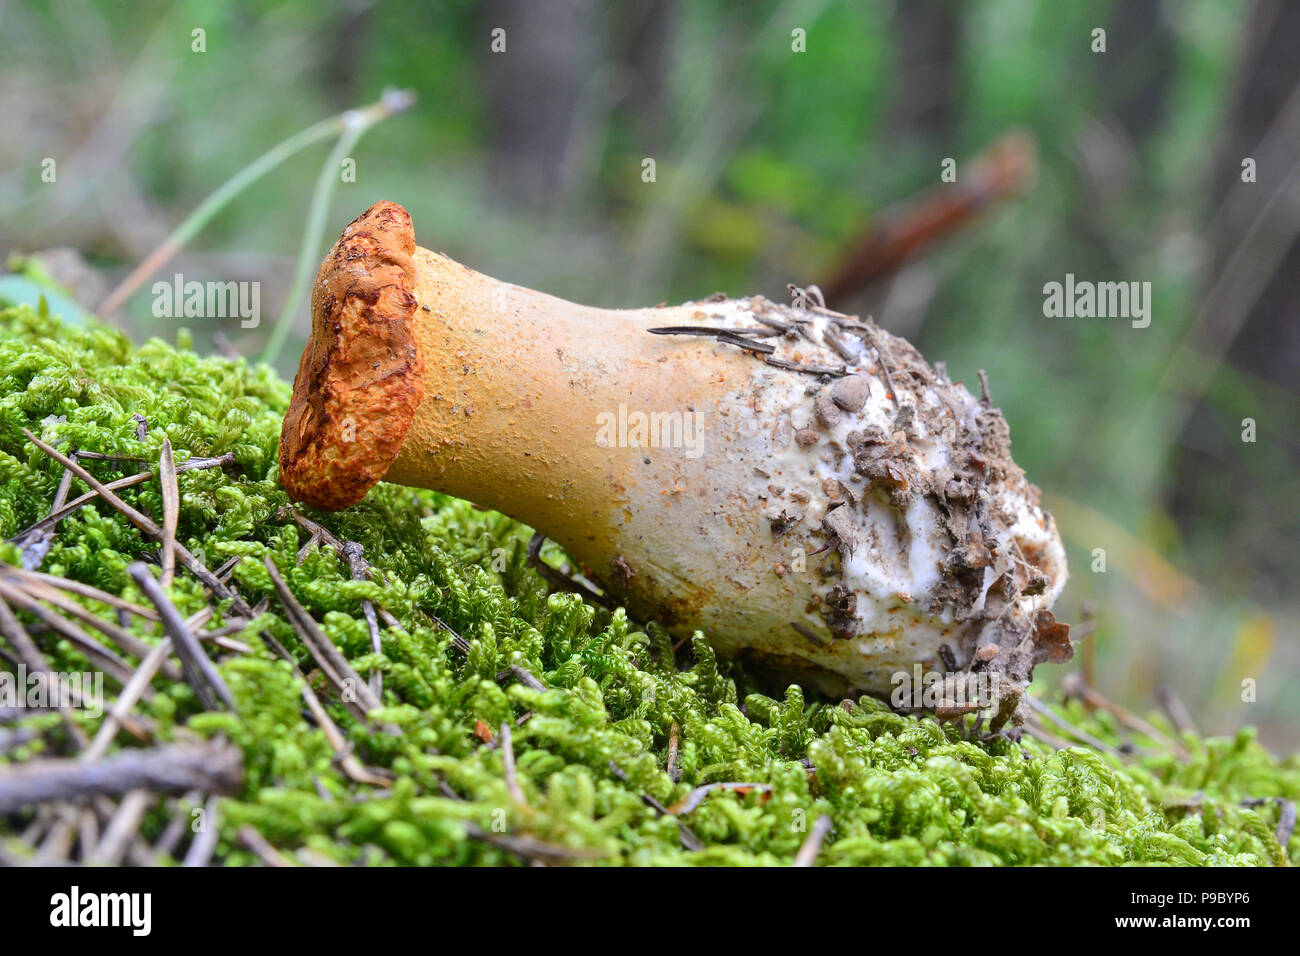 hydnum rufescens mushroom in the woods Stock Photo